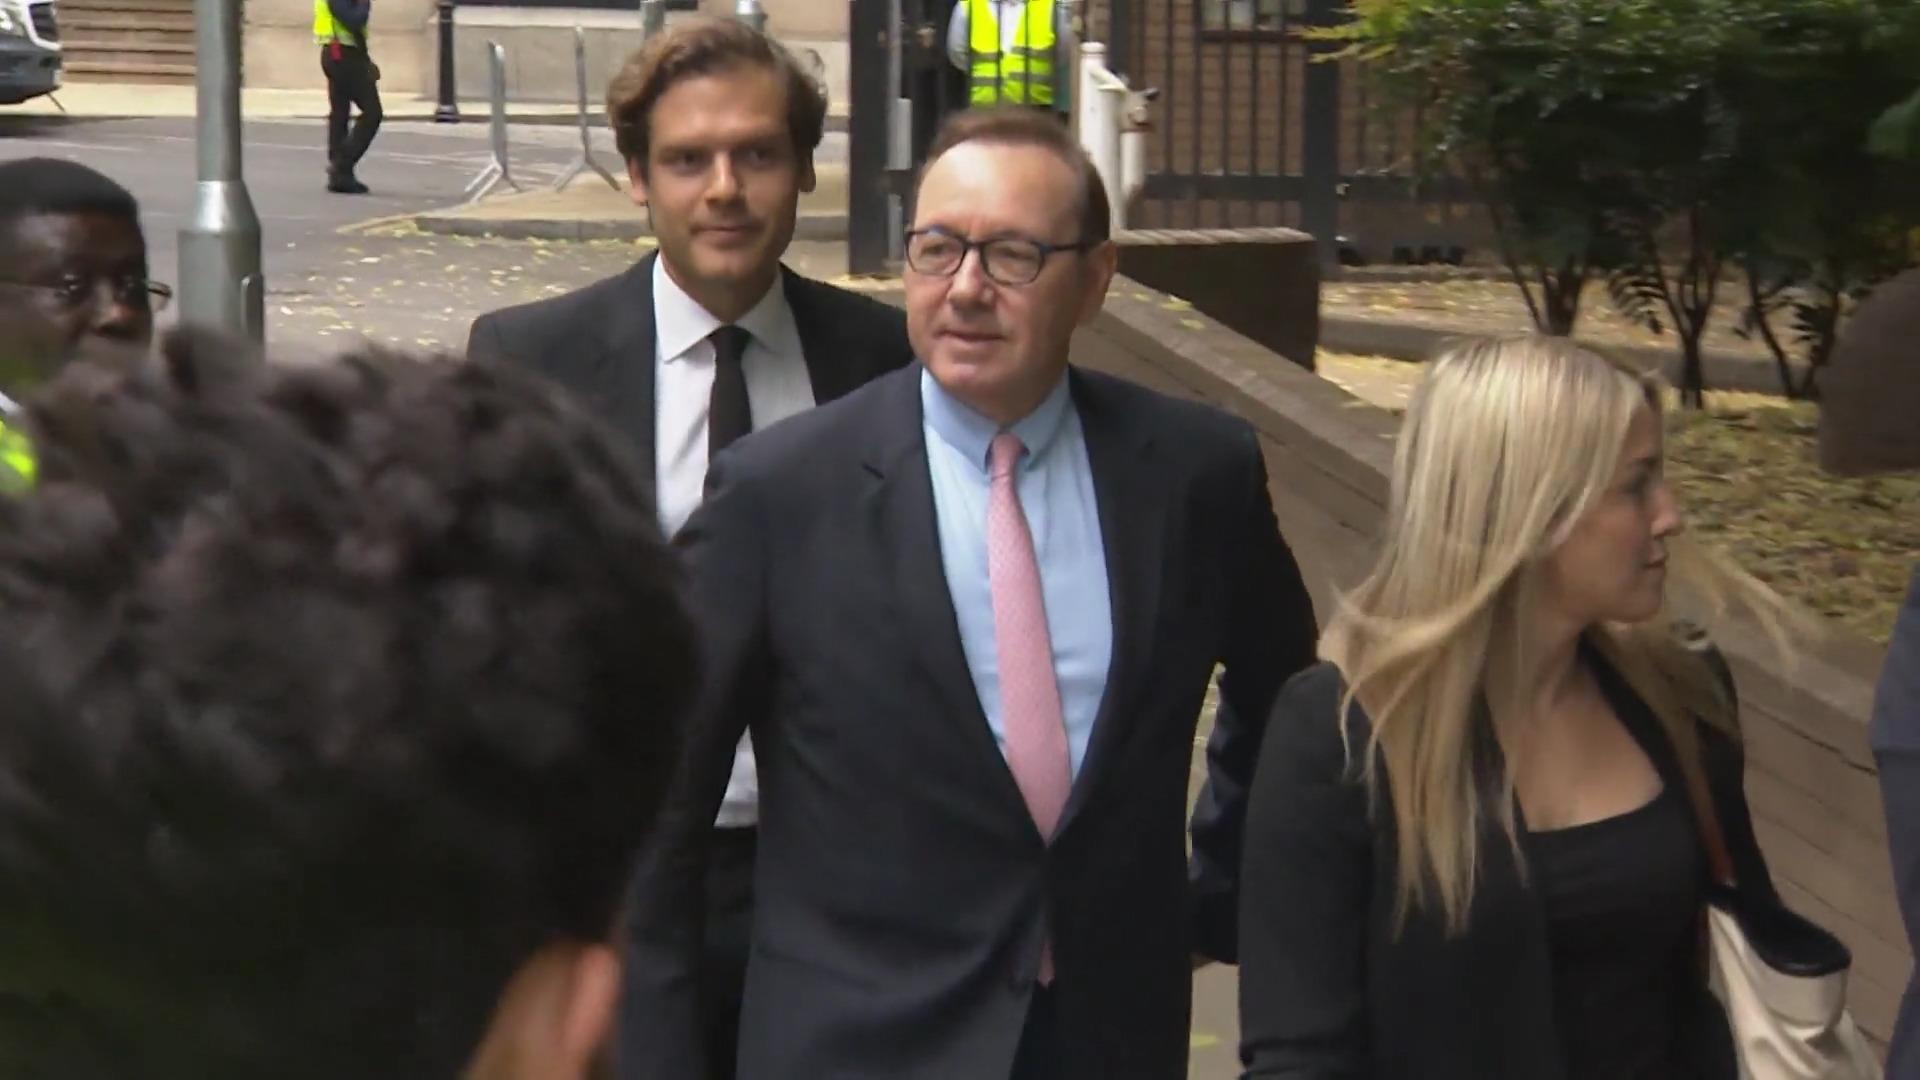 Prozess gegen Kevin Spacey in London beginnt Anklagen wegen Sexualdelikten